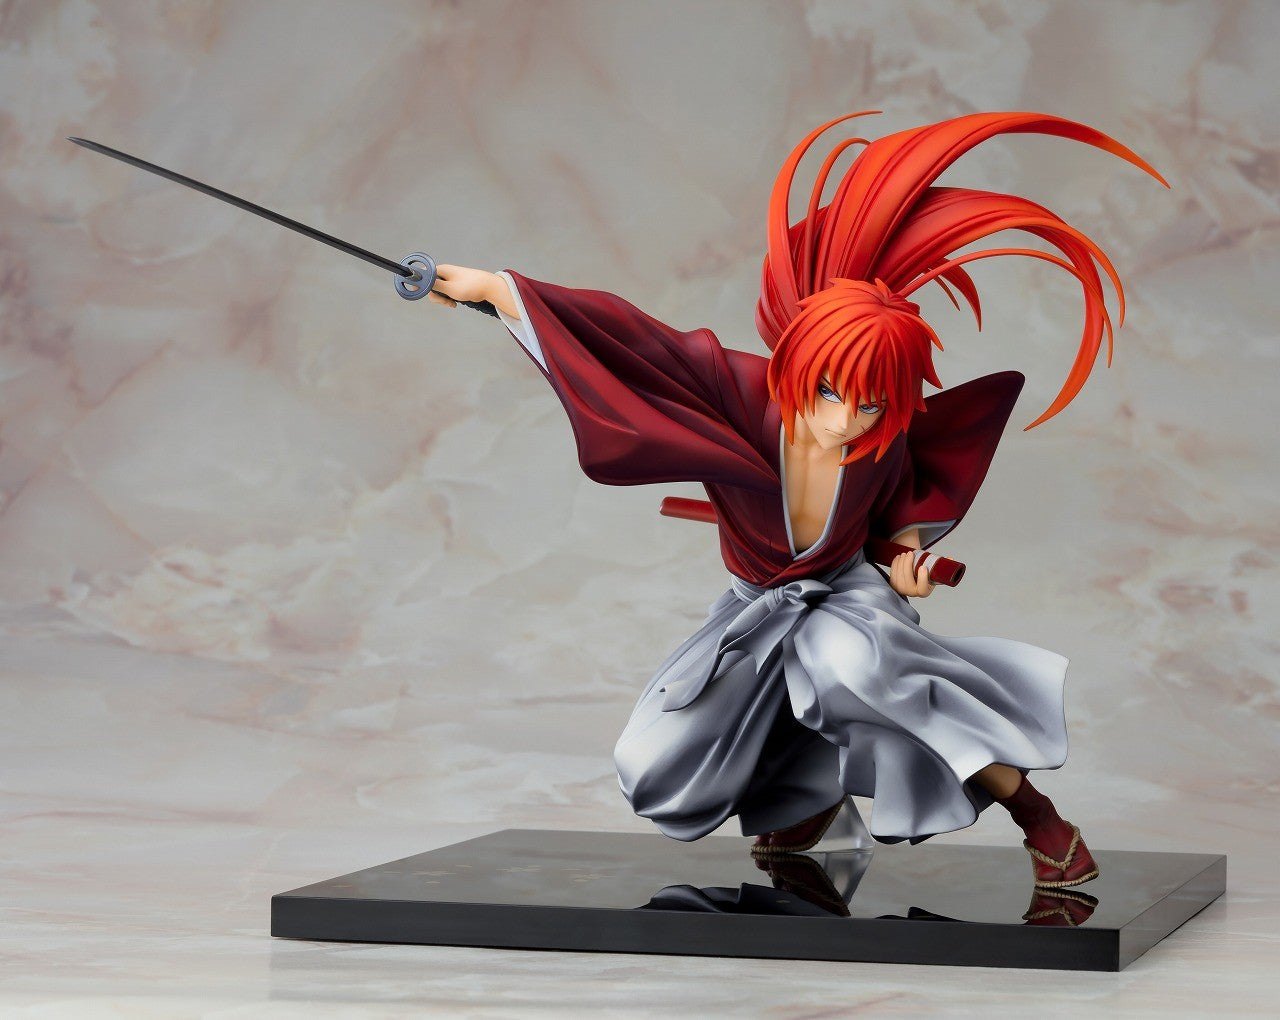  Himura Kenshin from Rurouni Kenshin (Samurai X) by